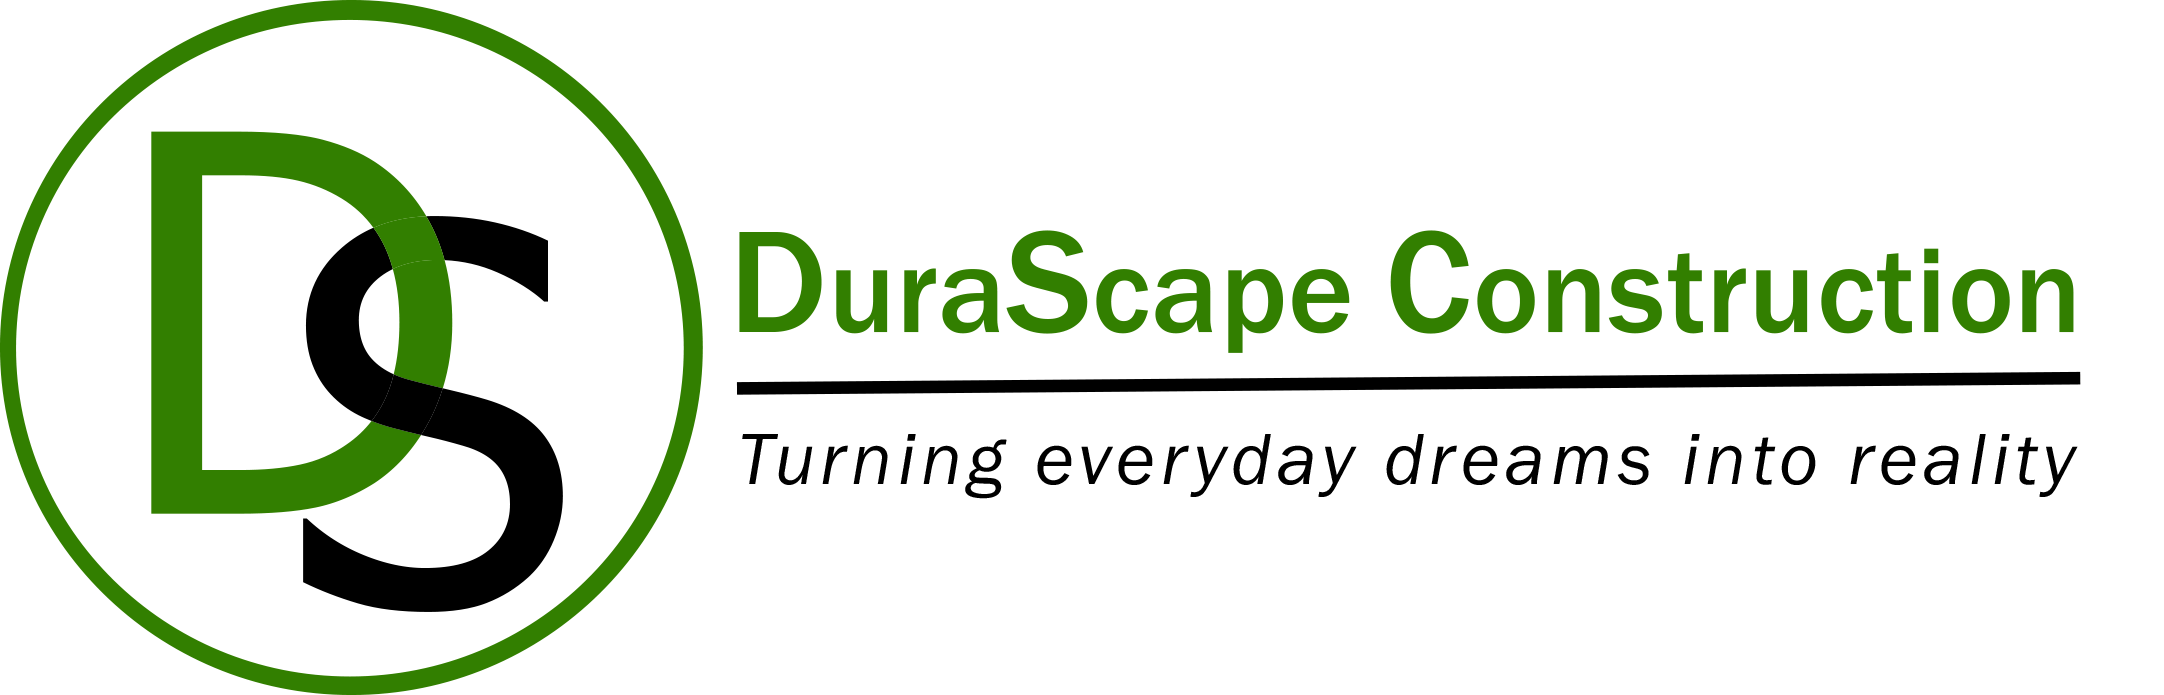 DuraScape Construction